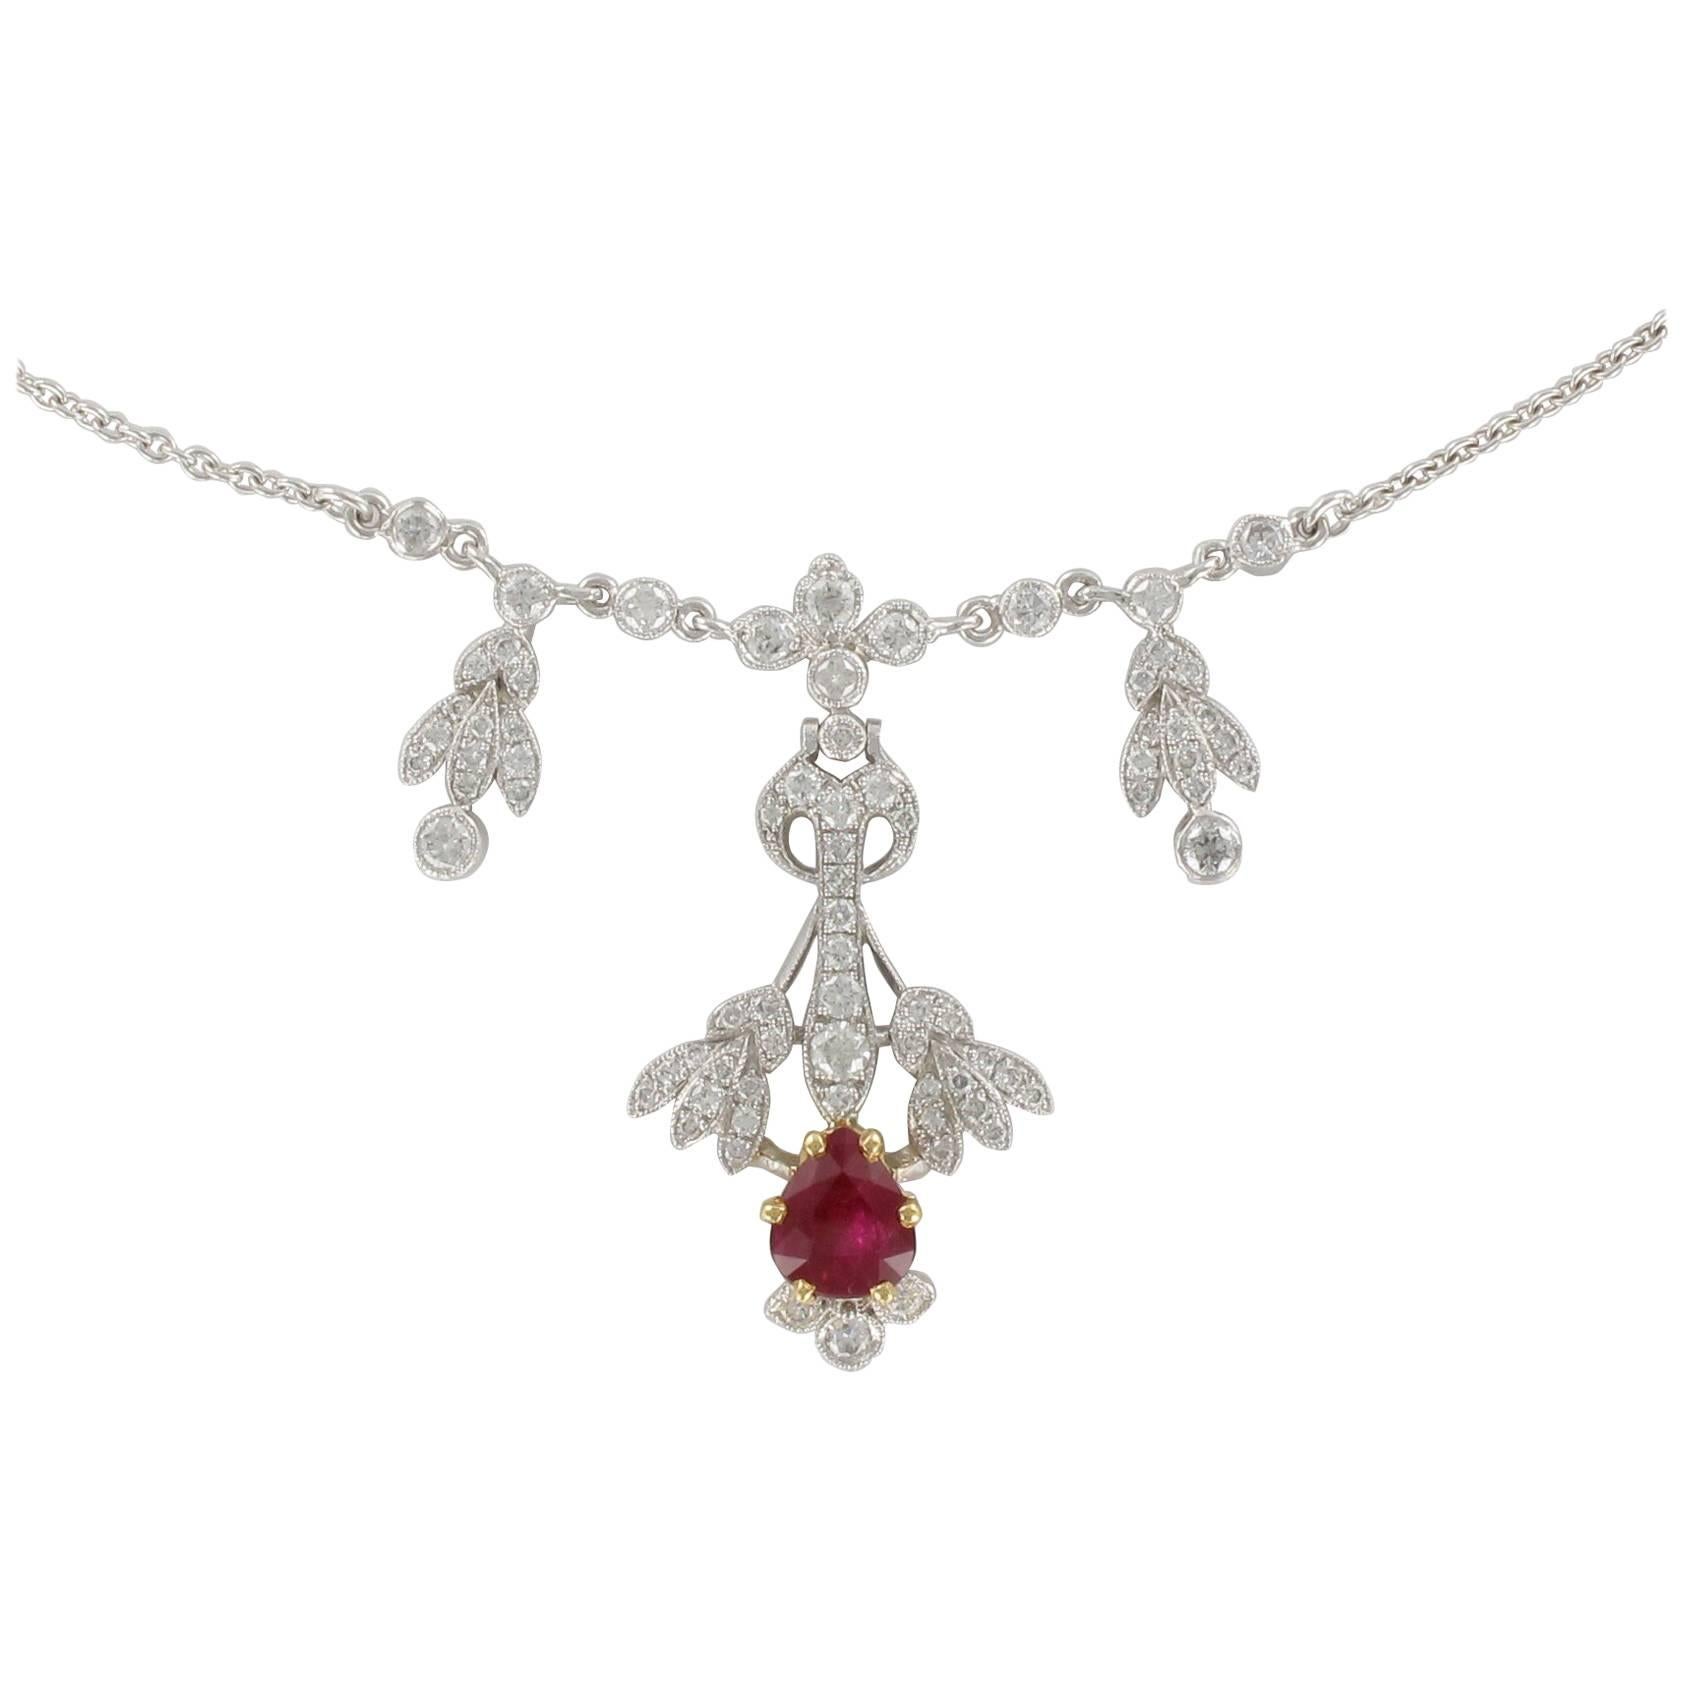 Collier pendentif de style Belle poque en platine avec rubis de 1,16 carat et diamants de 1,06 carat